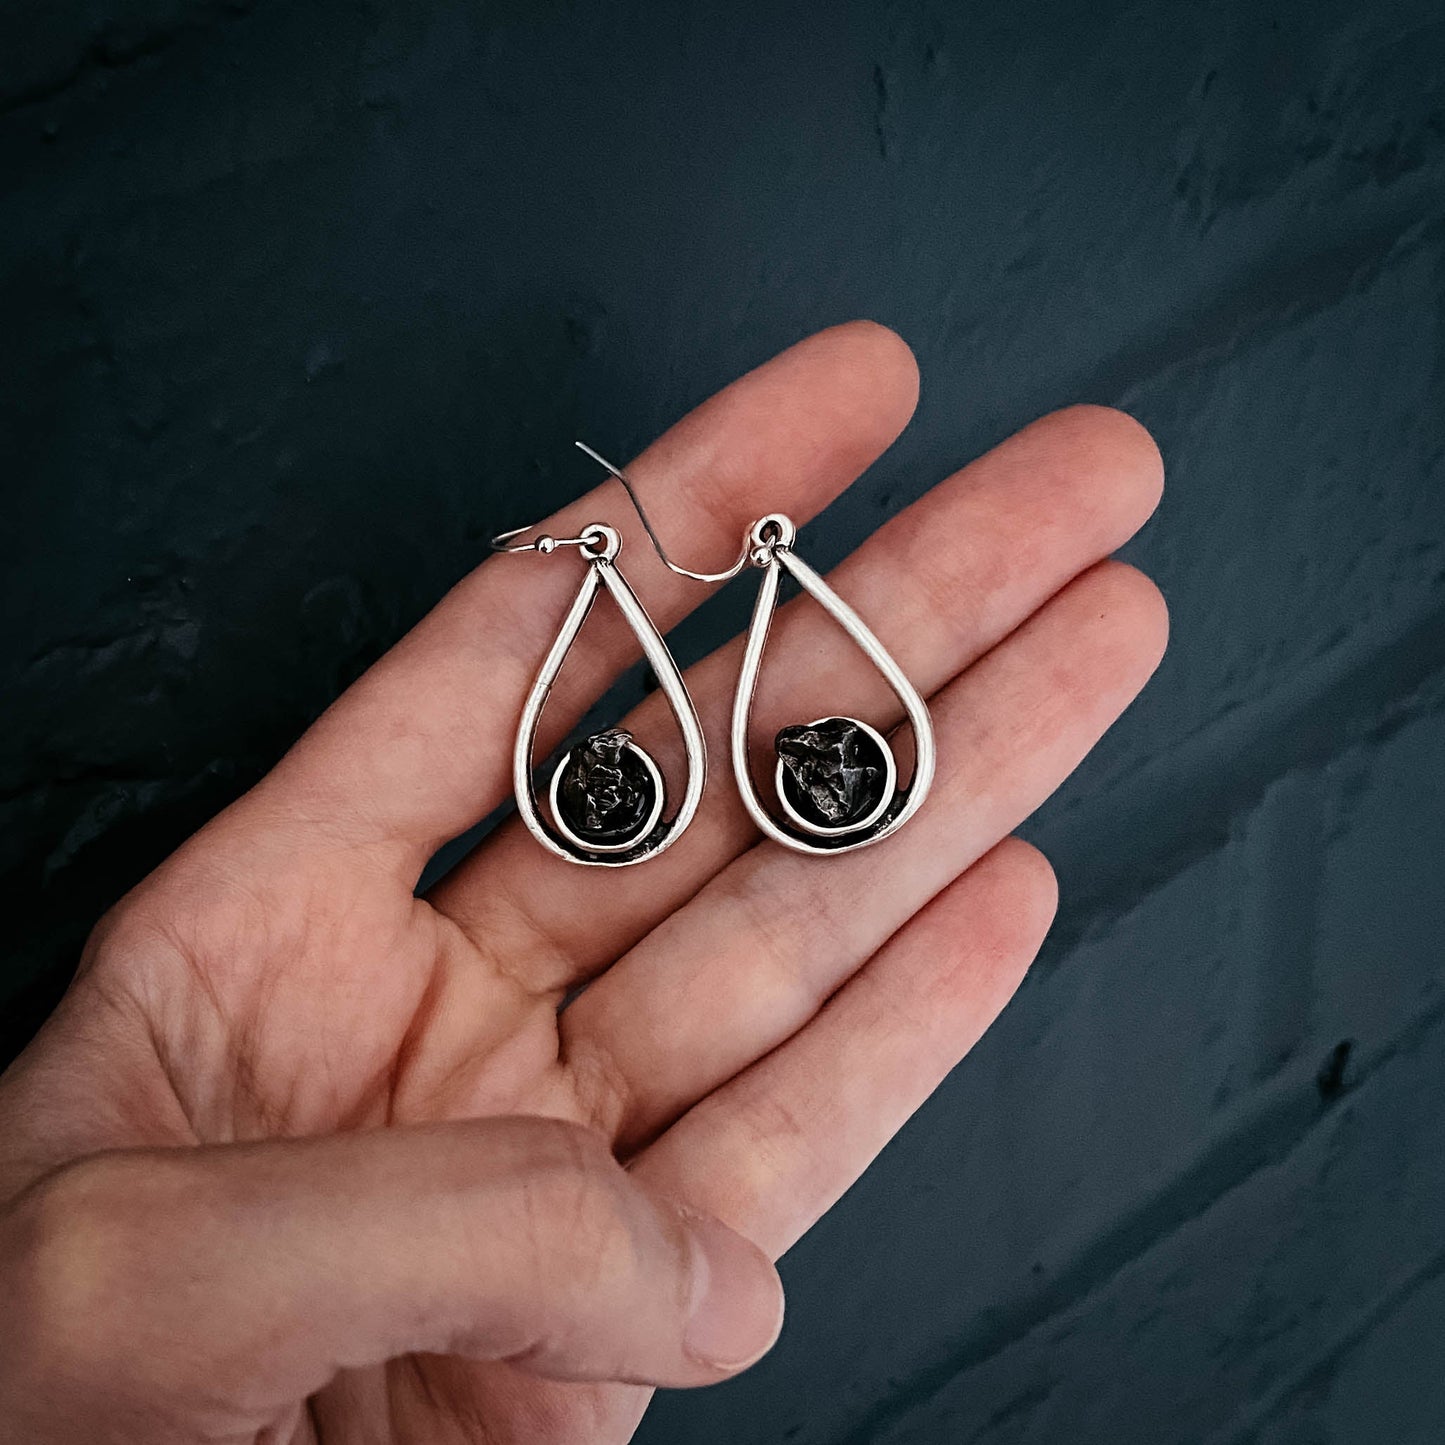 Meteorite Jewelry Set | Teardrop Necklace and Earrings